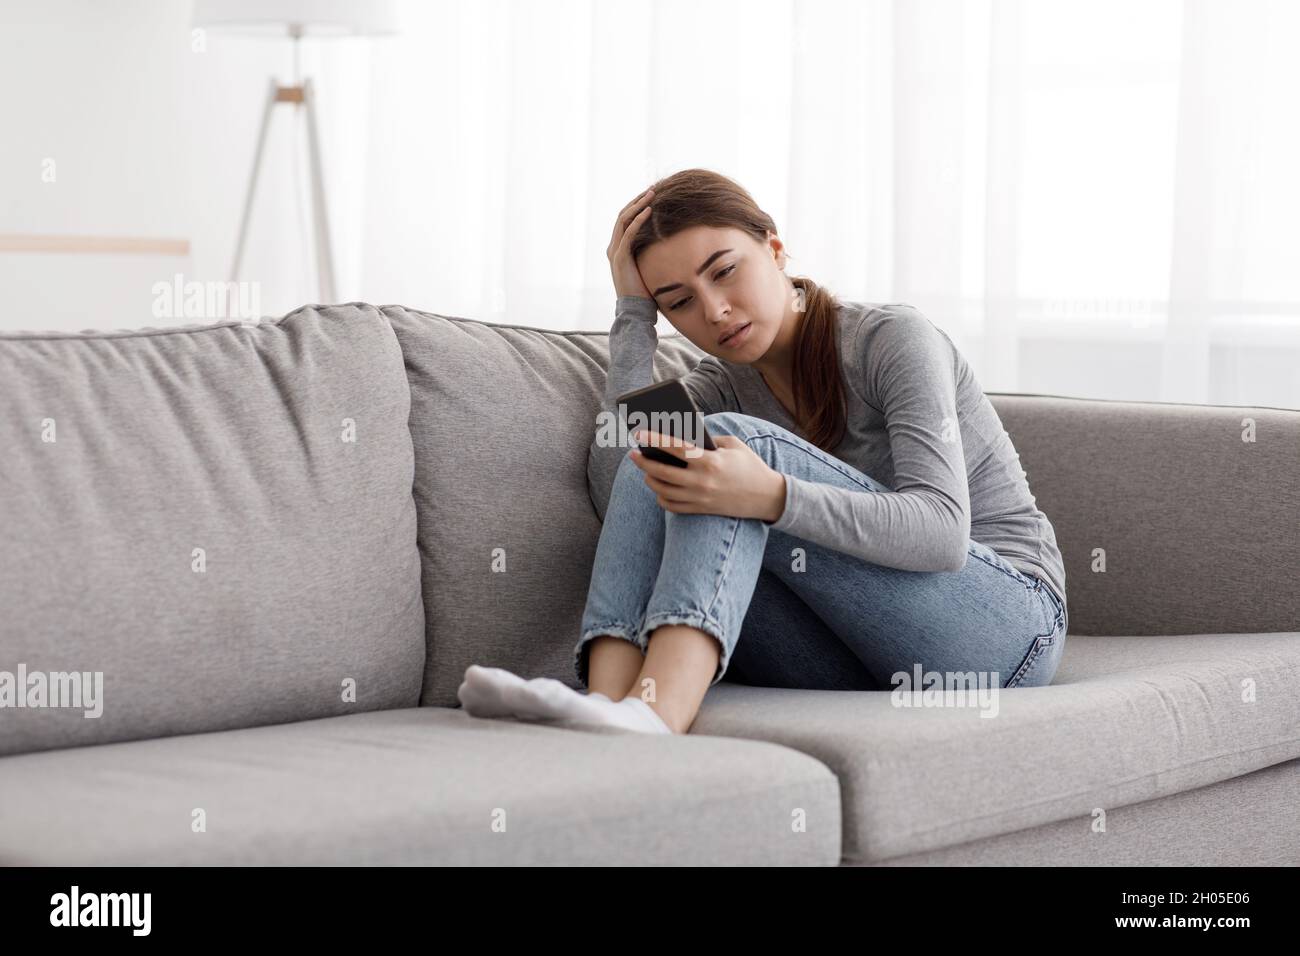 Triste déprimé inquiète femme européenne millénaire assise sur un canapé recevant de mauvaises nouvelles, en attente d'appel ou de réponse d'un gars à l'intérieur de la maison.Problèmes à Banque D'Images